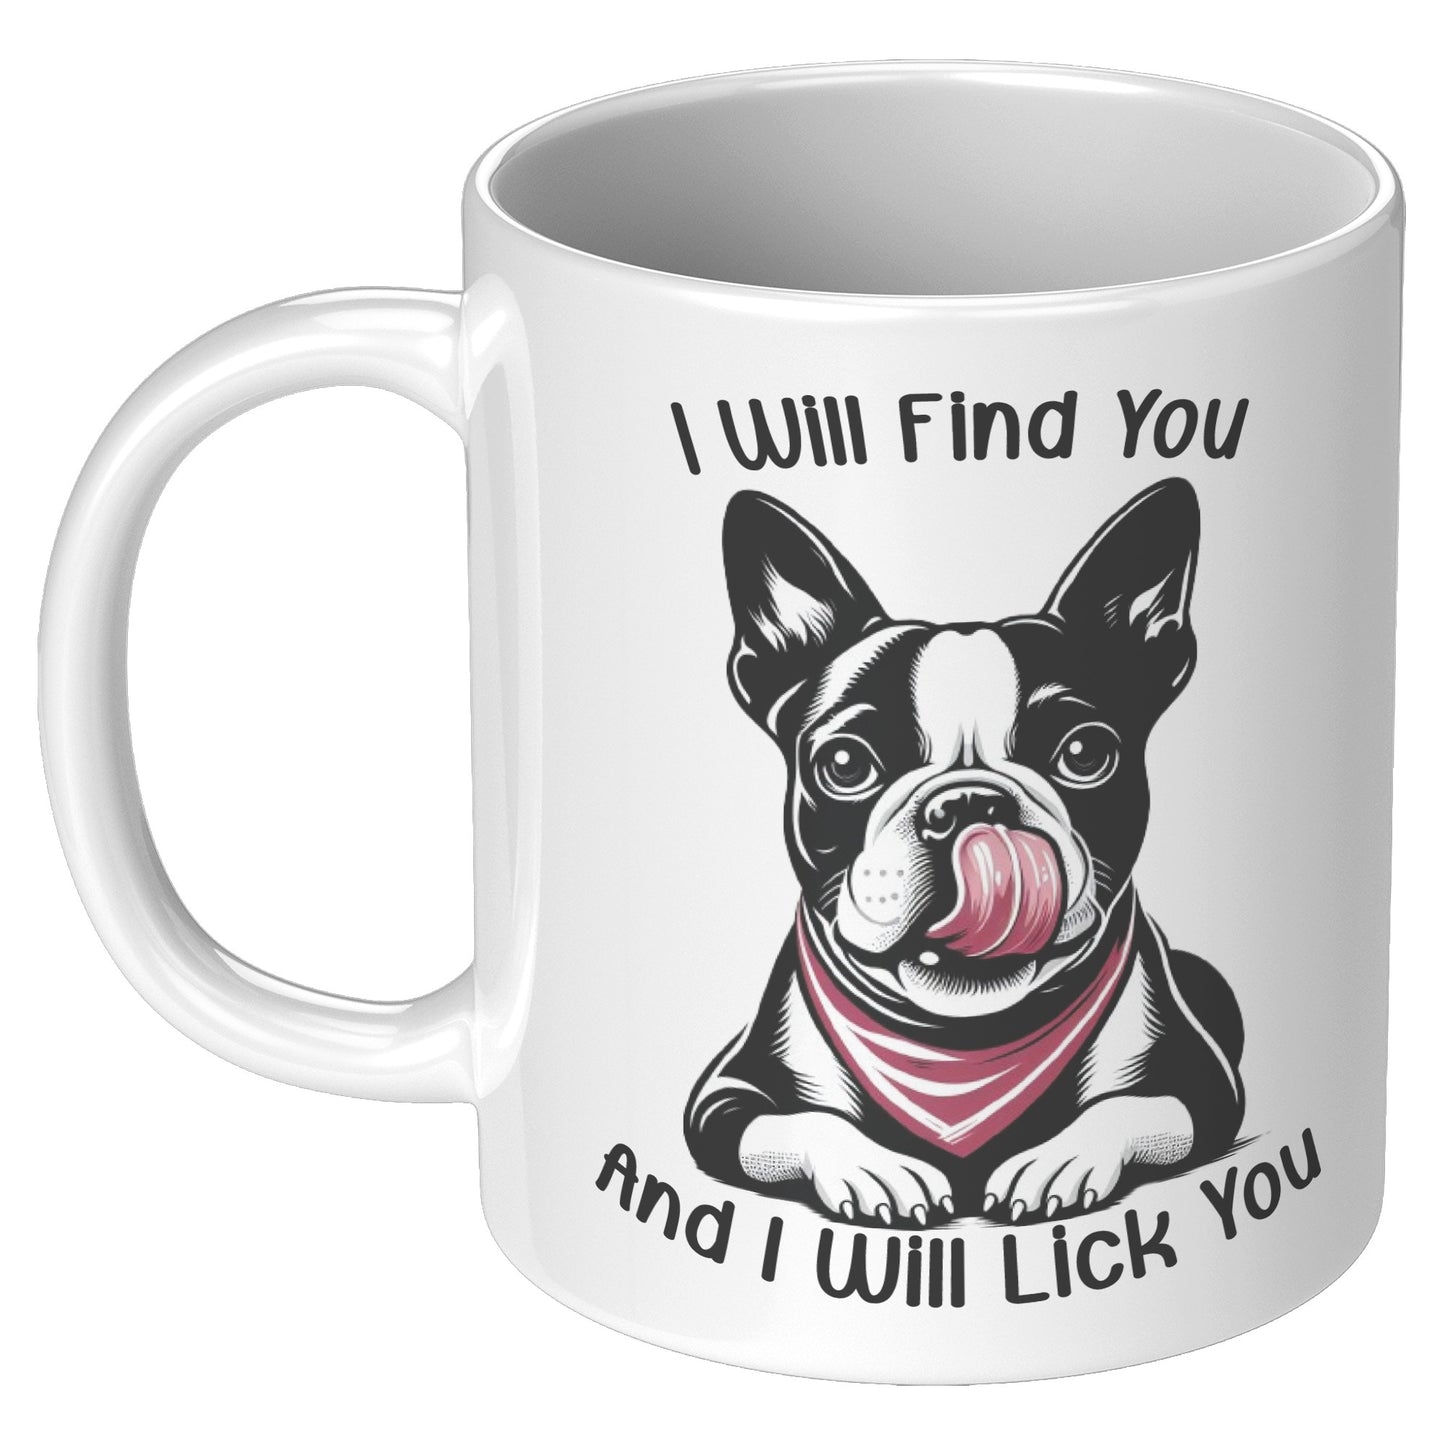 Tilly-Mug for Boston Terrier lovers